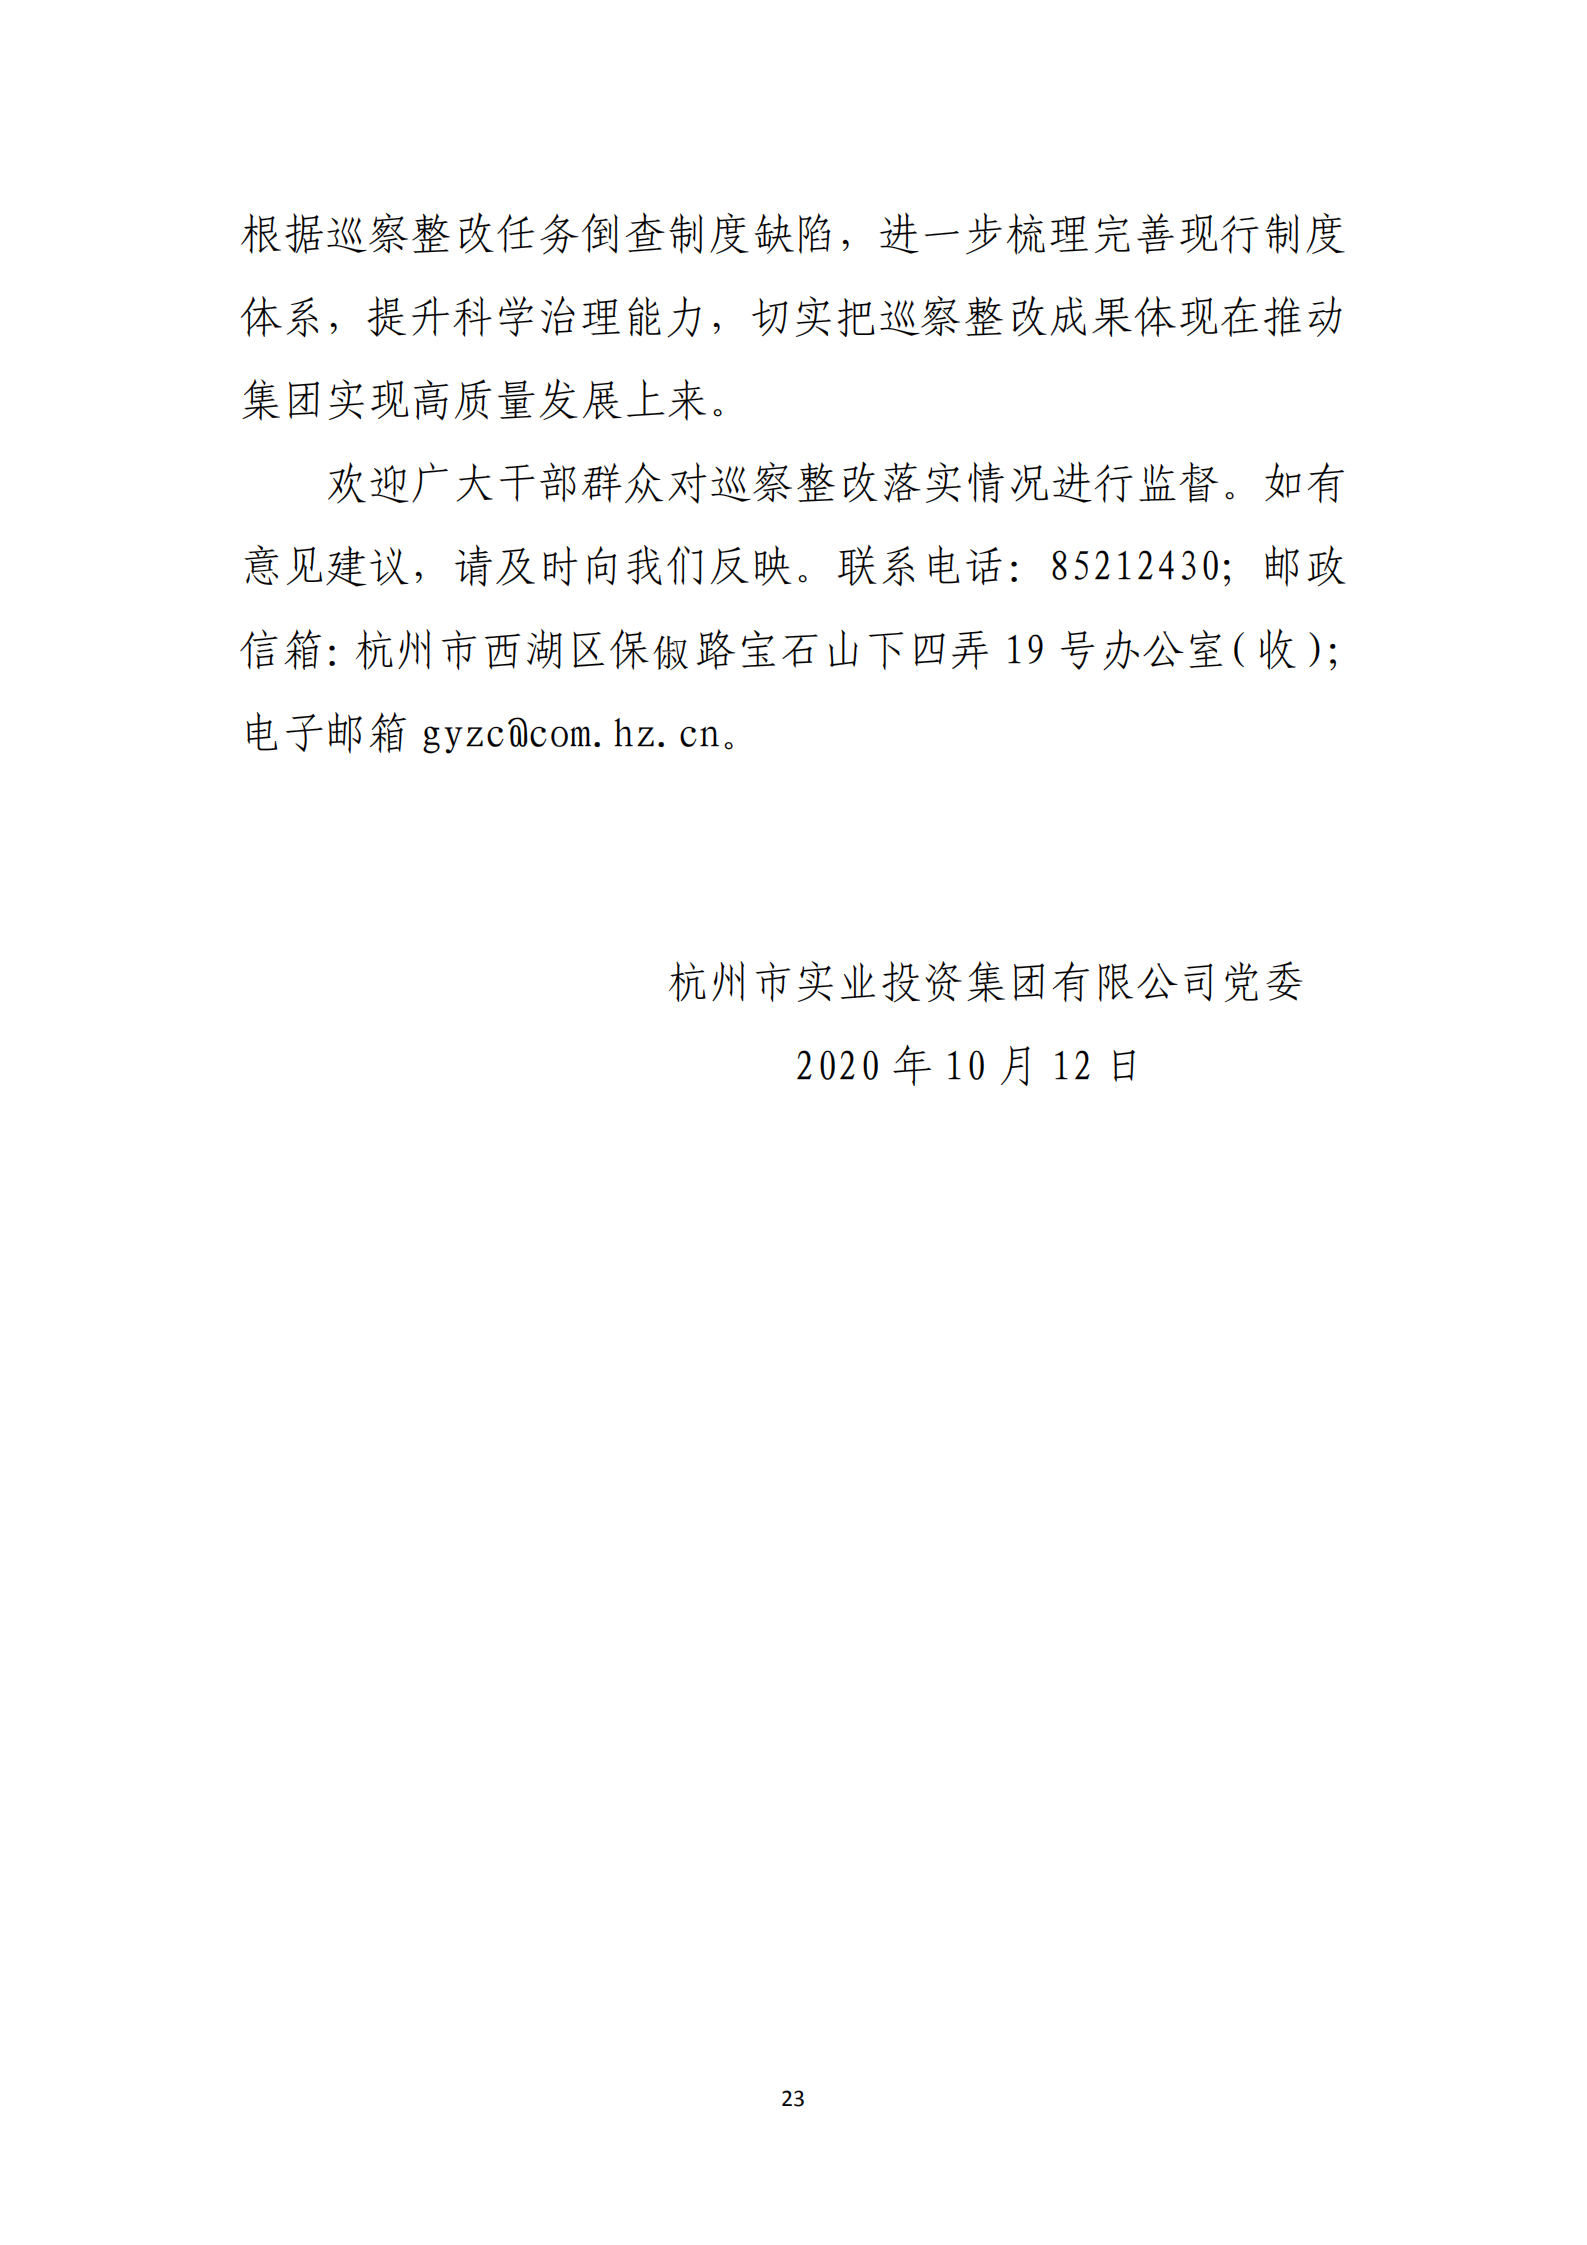 乐虎国际游戏官网党委关于巡察整改情况的通报_22.png